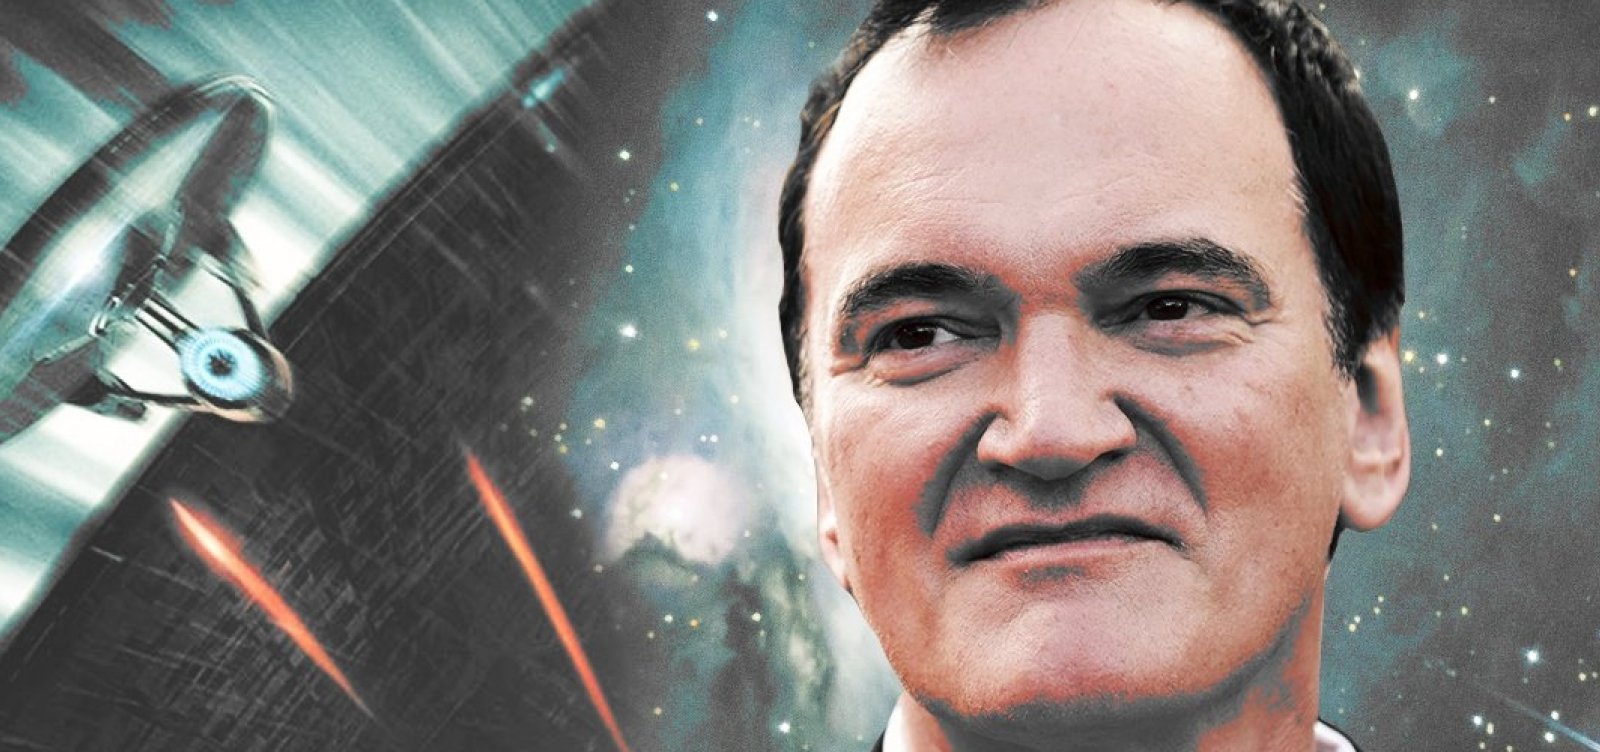 Tarantino pode dirigir novo Star Trek e desconversa sobre encerrar carreira 